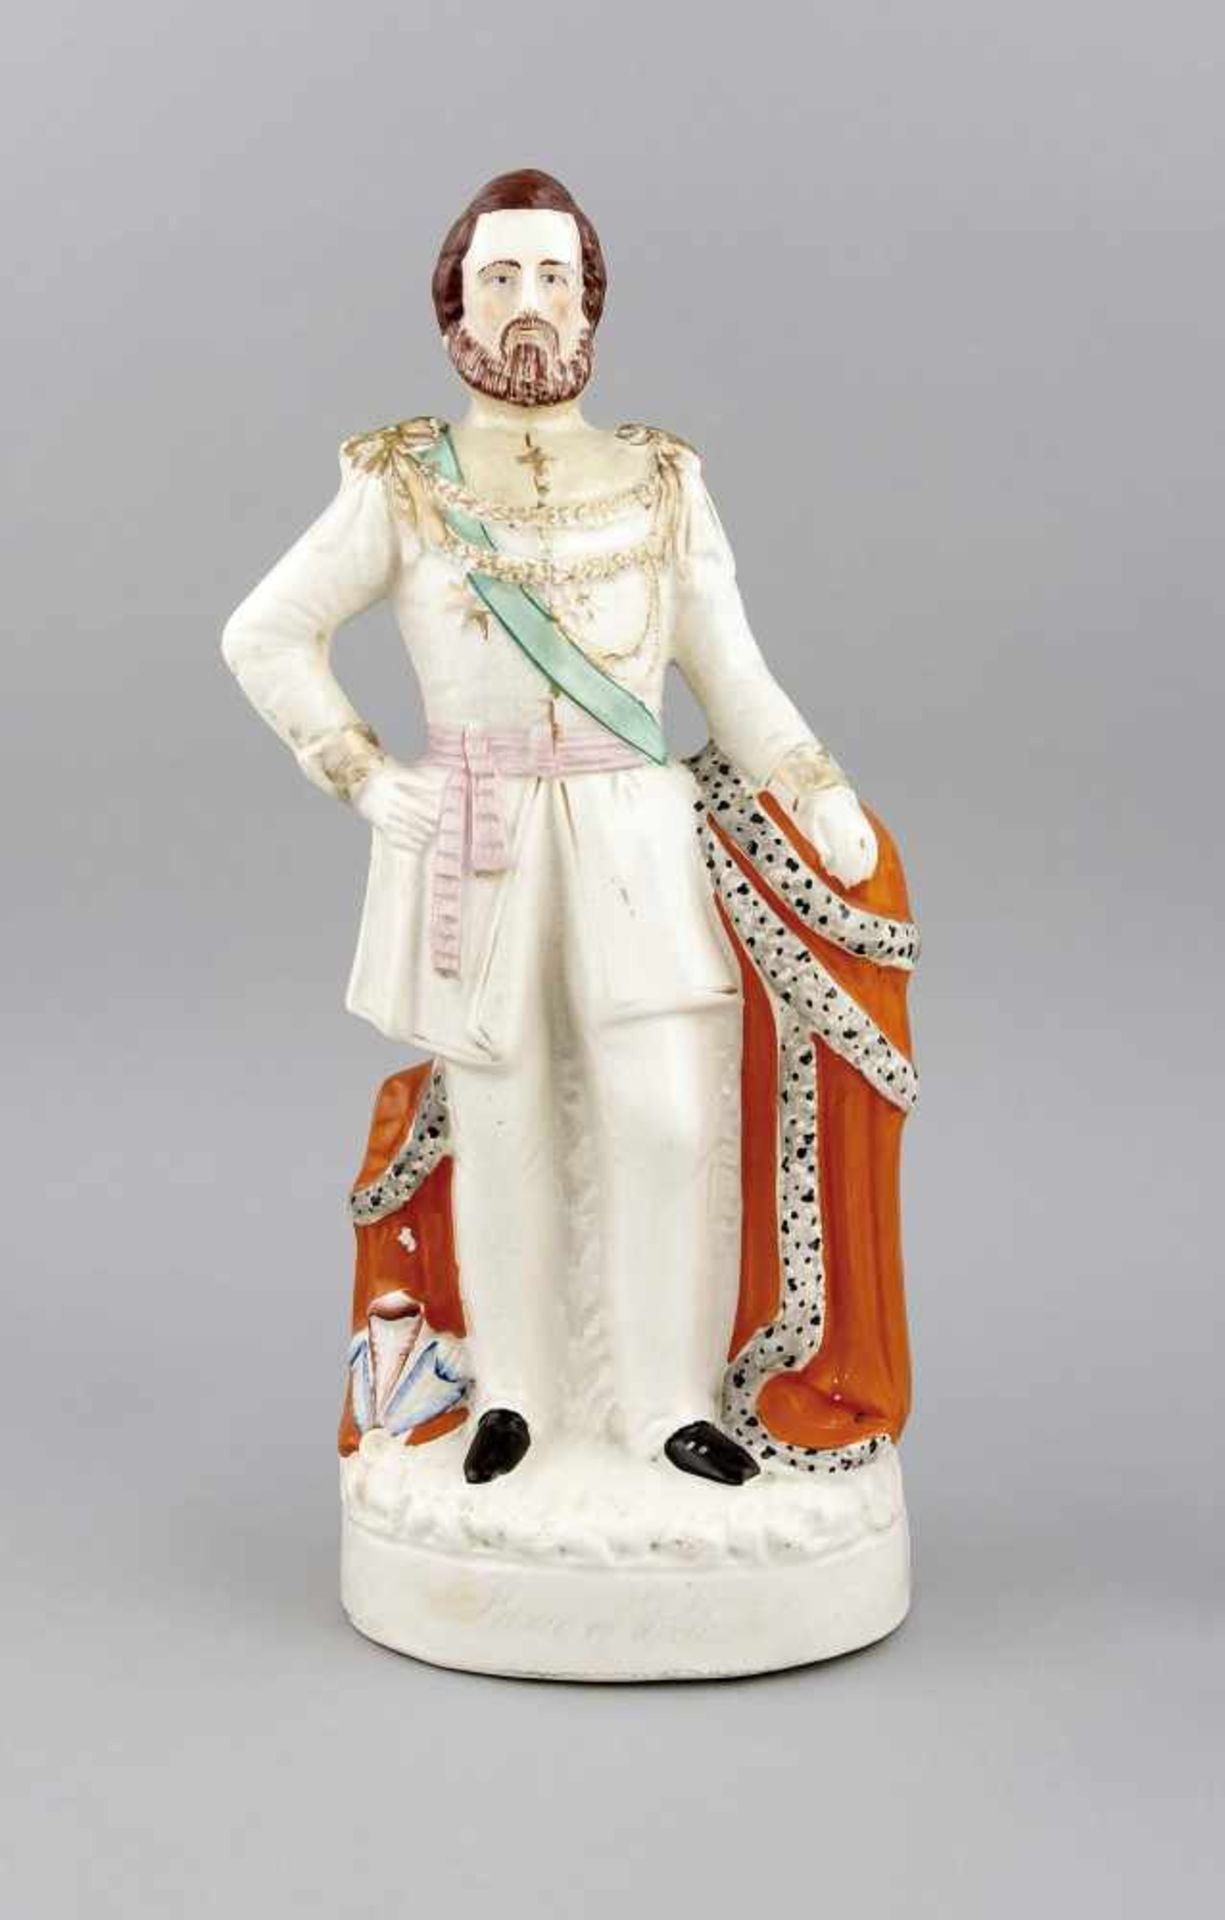 Prince of Wales, Staffordshire, Mitte 19. Jh., Victorianische Figur, dargestellt PrinzAlbert, auf